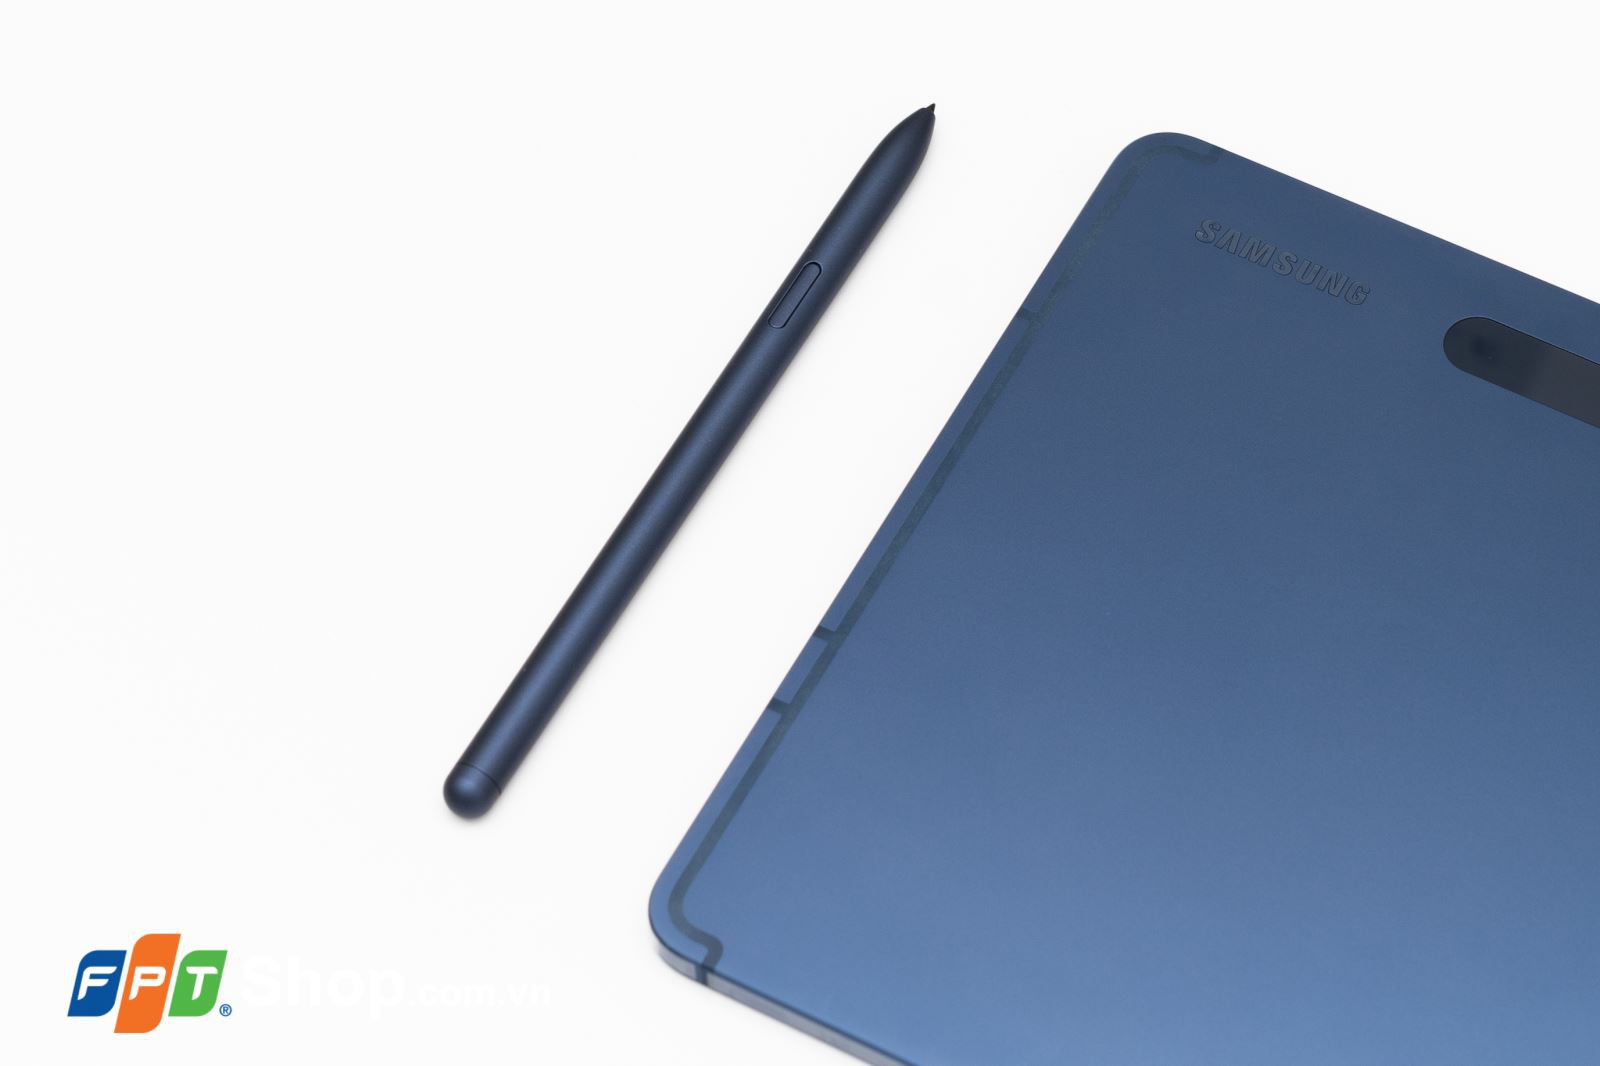 Samsung Galaxy Tab S7/S7+ Xanh Navy – Những chiếc tablet đáng giá đến từng xu 3